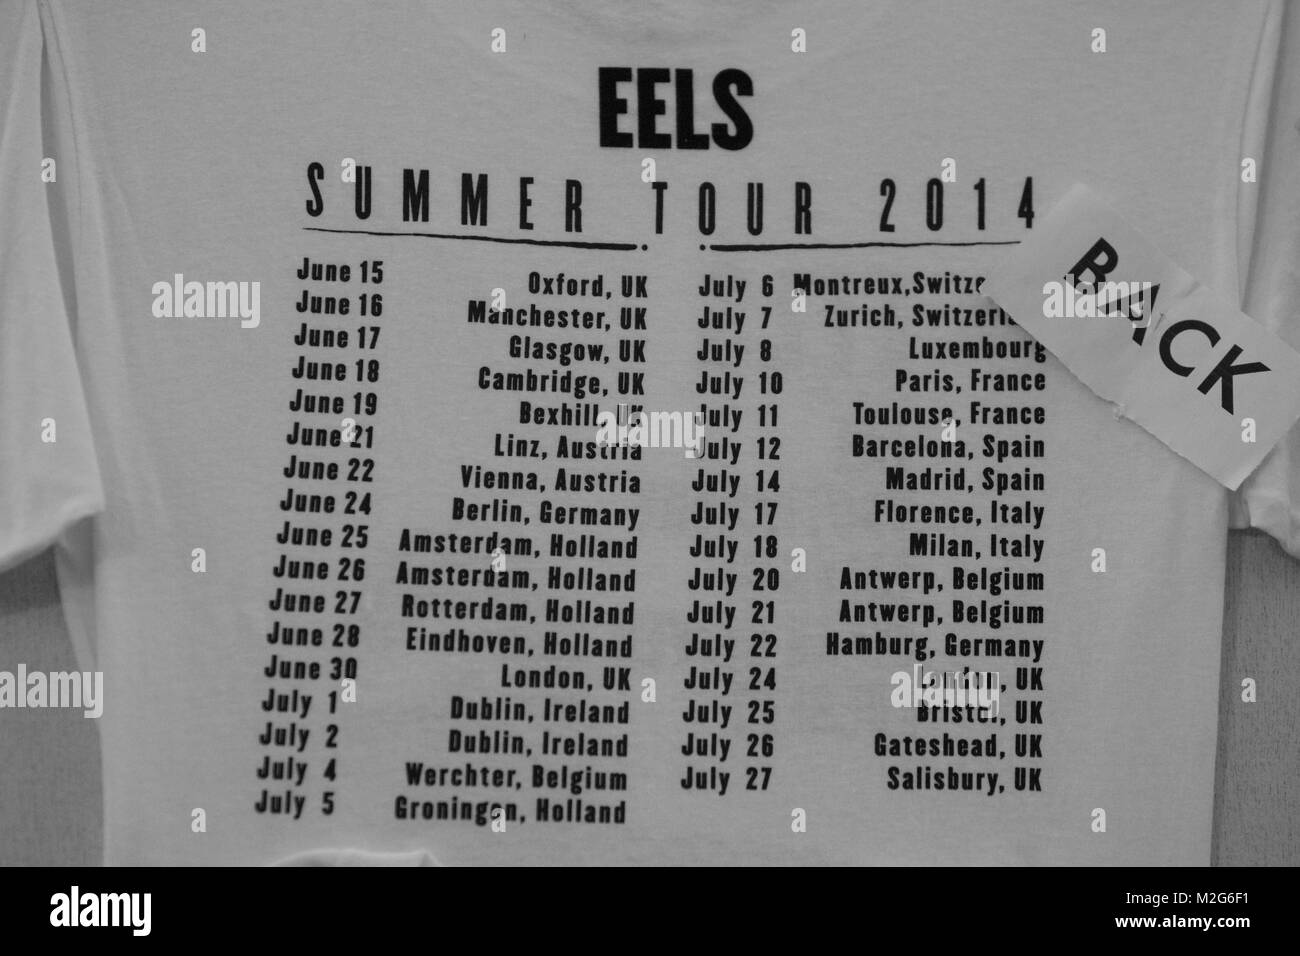 Eels ist eine US-amerikanische Rockband um Sänger und Gründer Mark Oliver Everett (Pseudonym: E ). Am 22.07.2014 präsentierte die Band das neue, orchestral anmutende Album 'The Cautionary Tales Of Mark Oliver Everett“, stilgerecht in der Laeiszhalle. Stock Photo